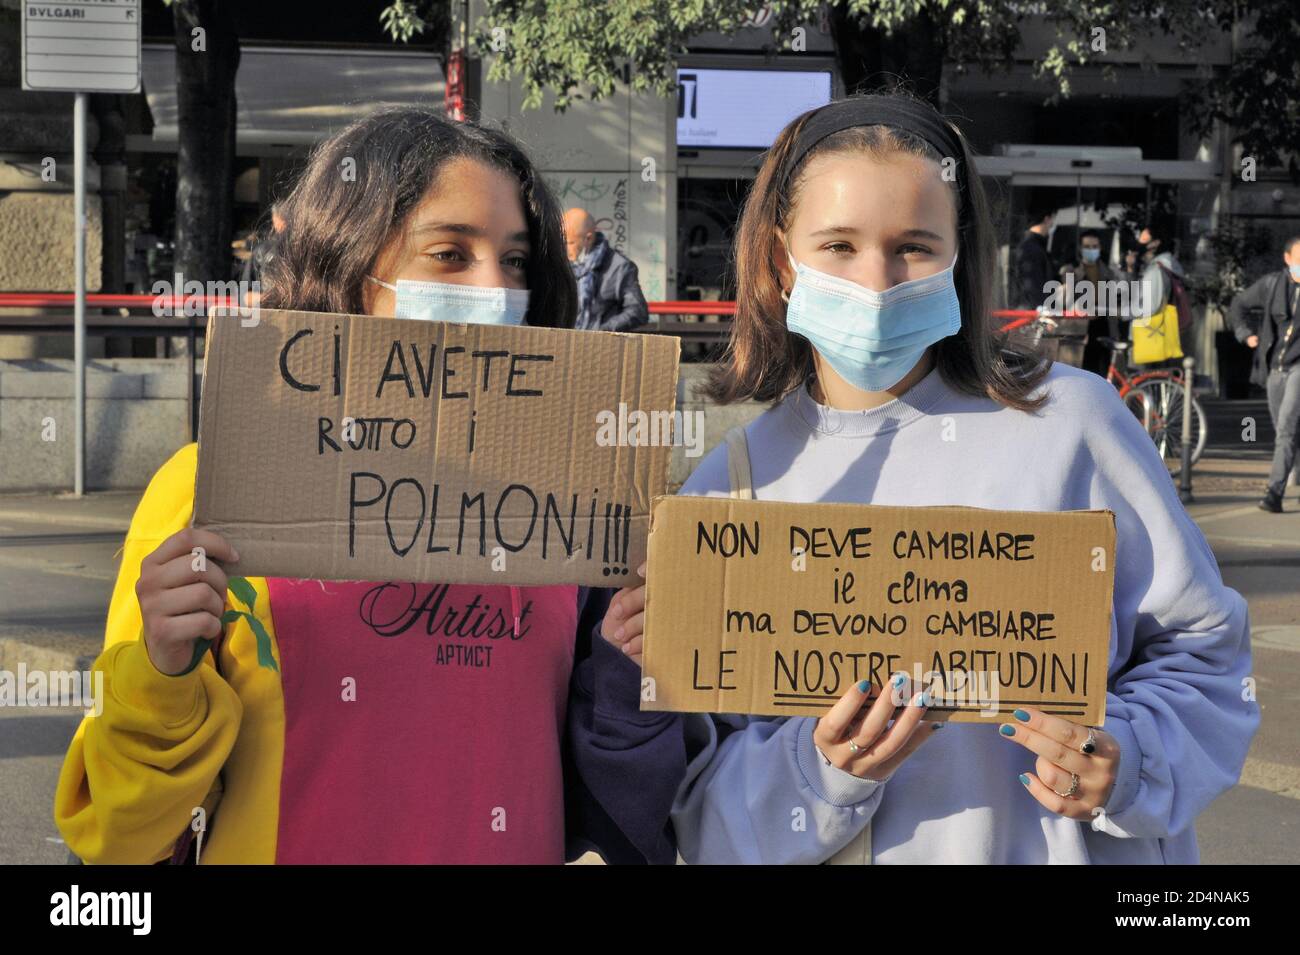 Milano (Italia), 2020 ottobre, i giovani del venerdì per il futuro, dopo l'interruzione dovuta all'epidemia di Covid 19, tornano in piazza per protestare contro il cambiamento climatico, cercando di rispettare le misure di sicurezza healt. Foto Stock